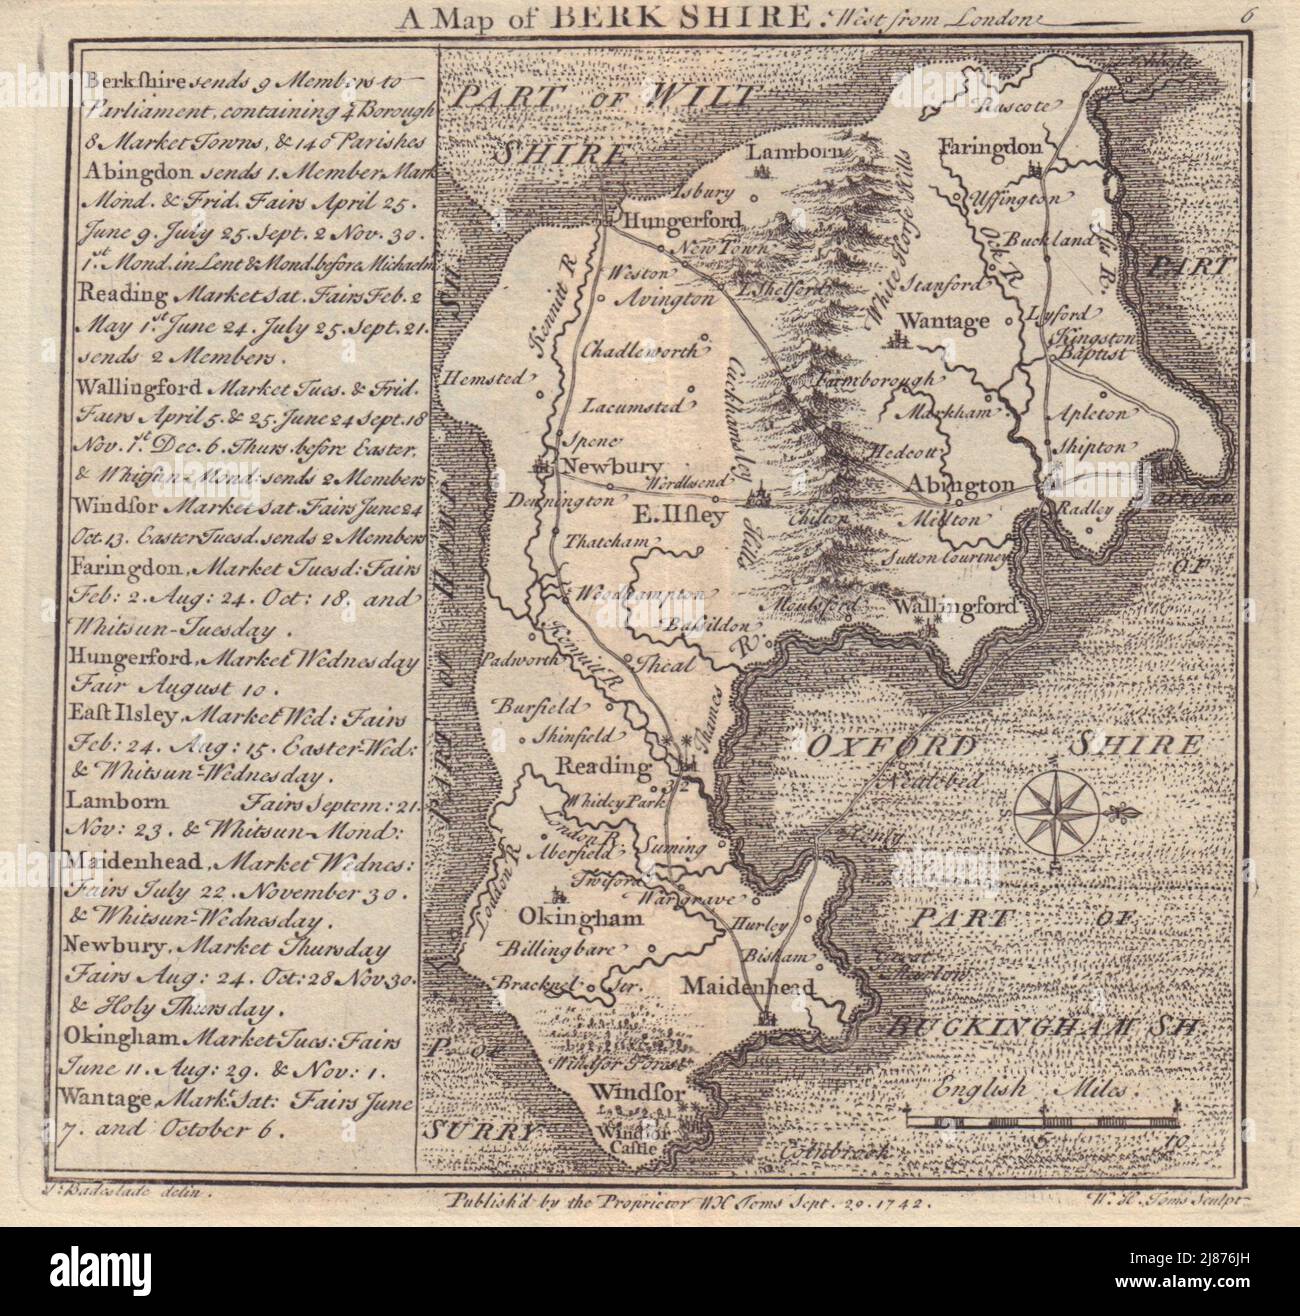 Antike Grafschaft Landkarte von Berkshire von Badeslade & Toms. West-Ausrichtung 1742 Stockfoto